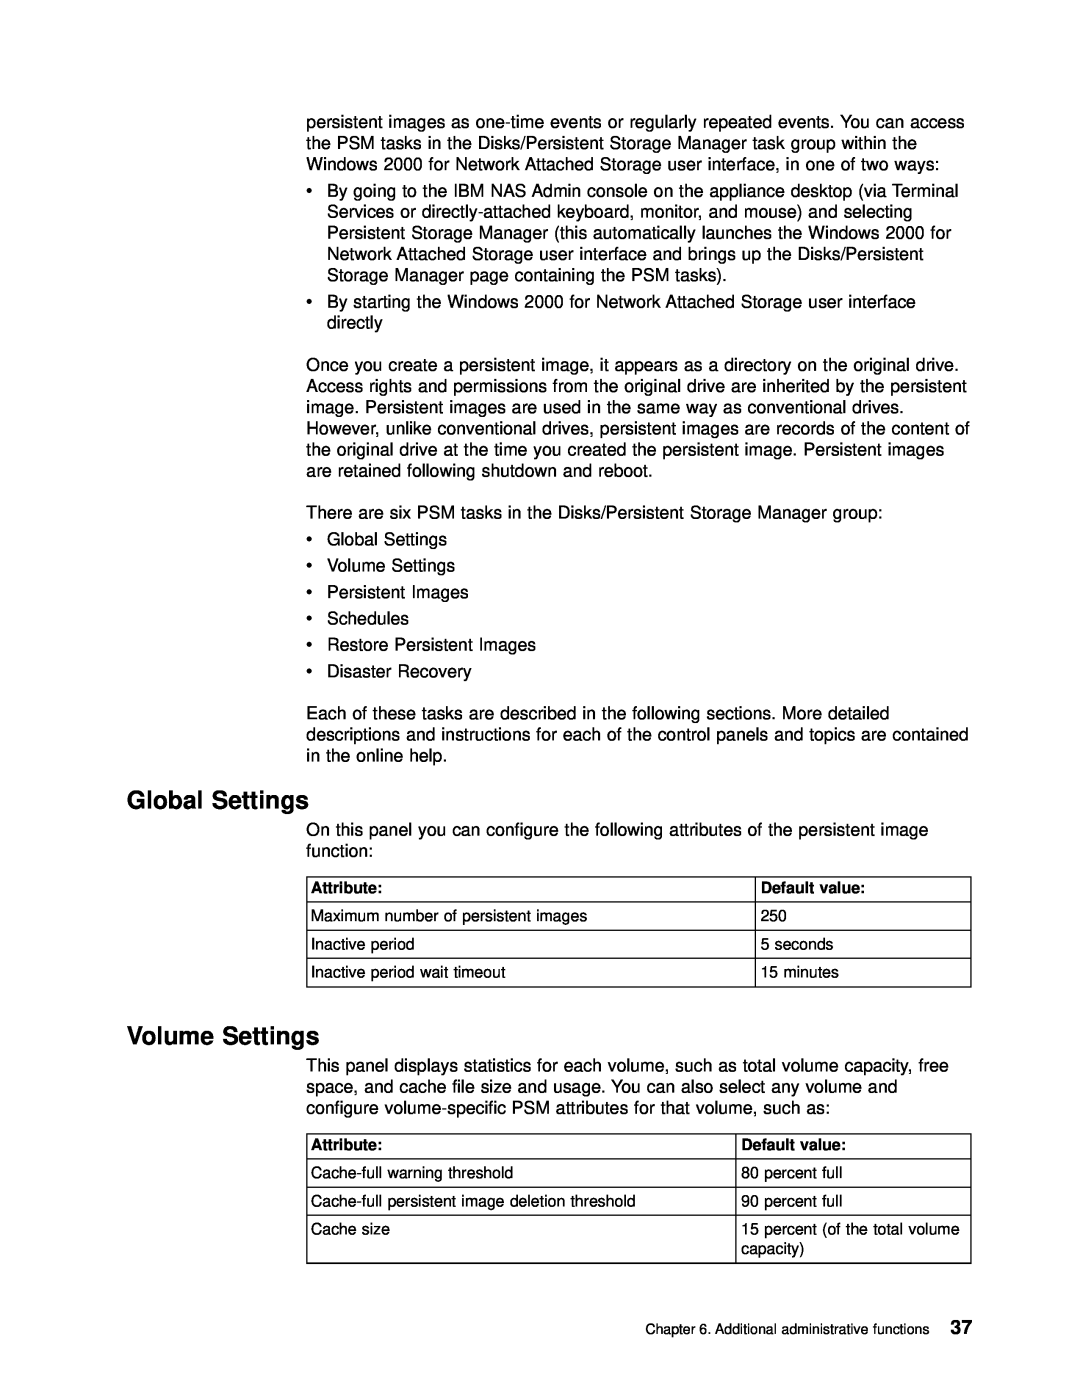 IBM 201 manual Global Settings, Volume Settings 